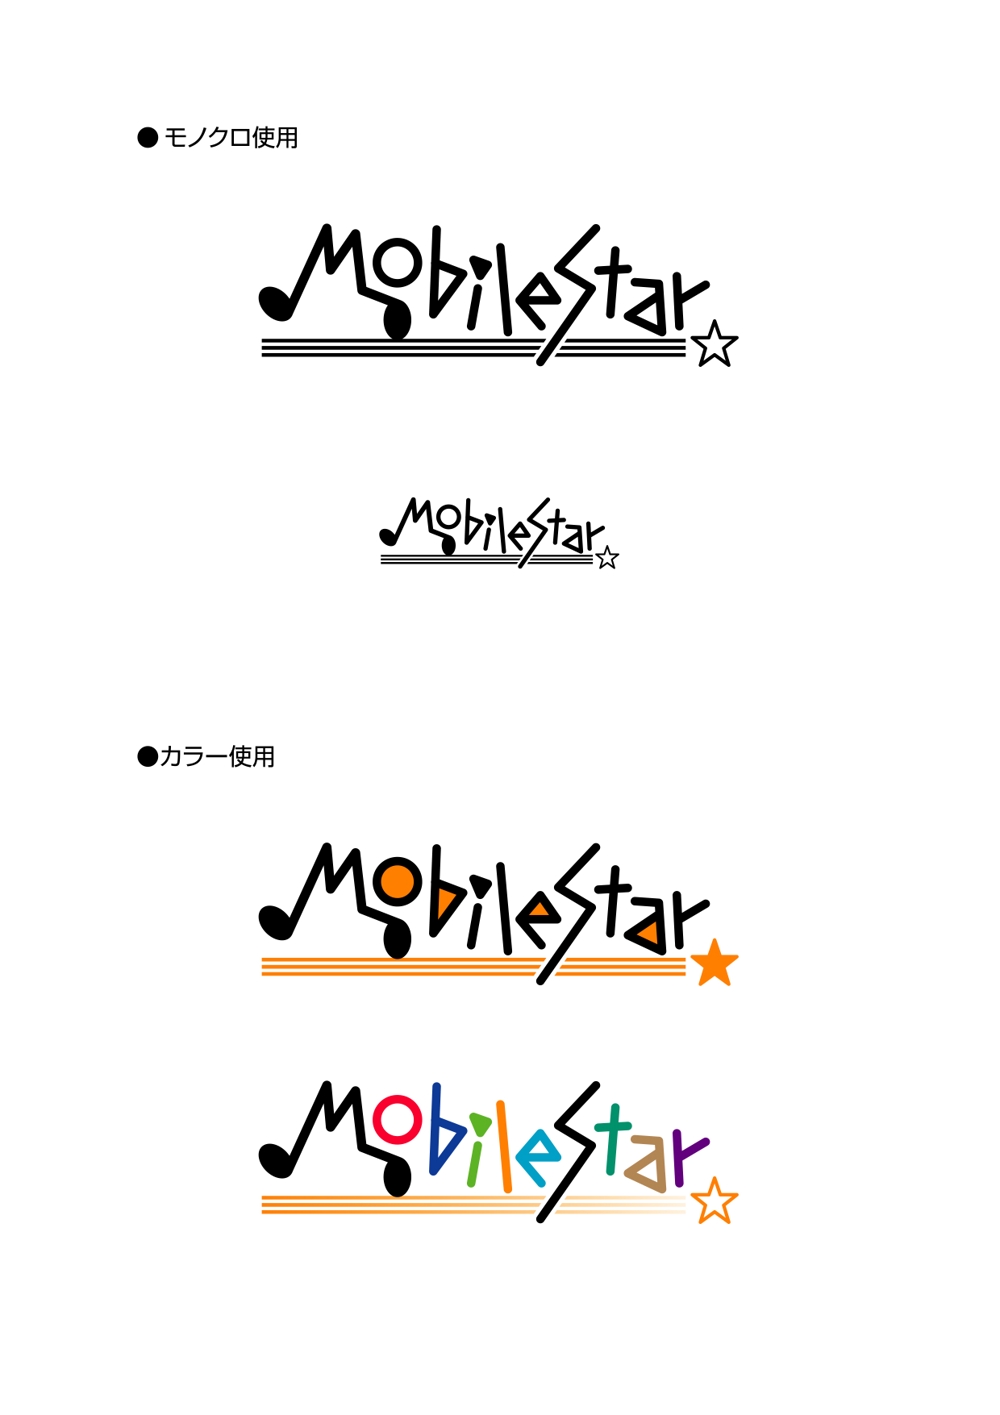 Mobile_Star.jpg